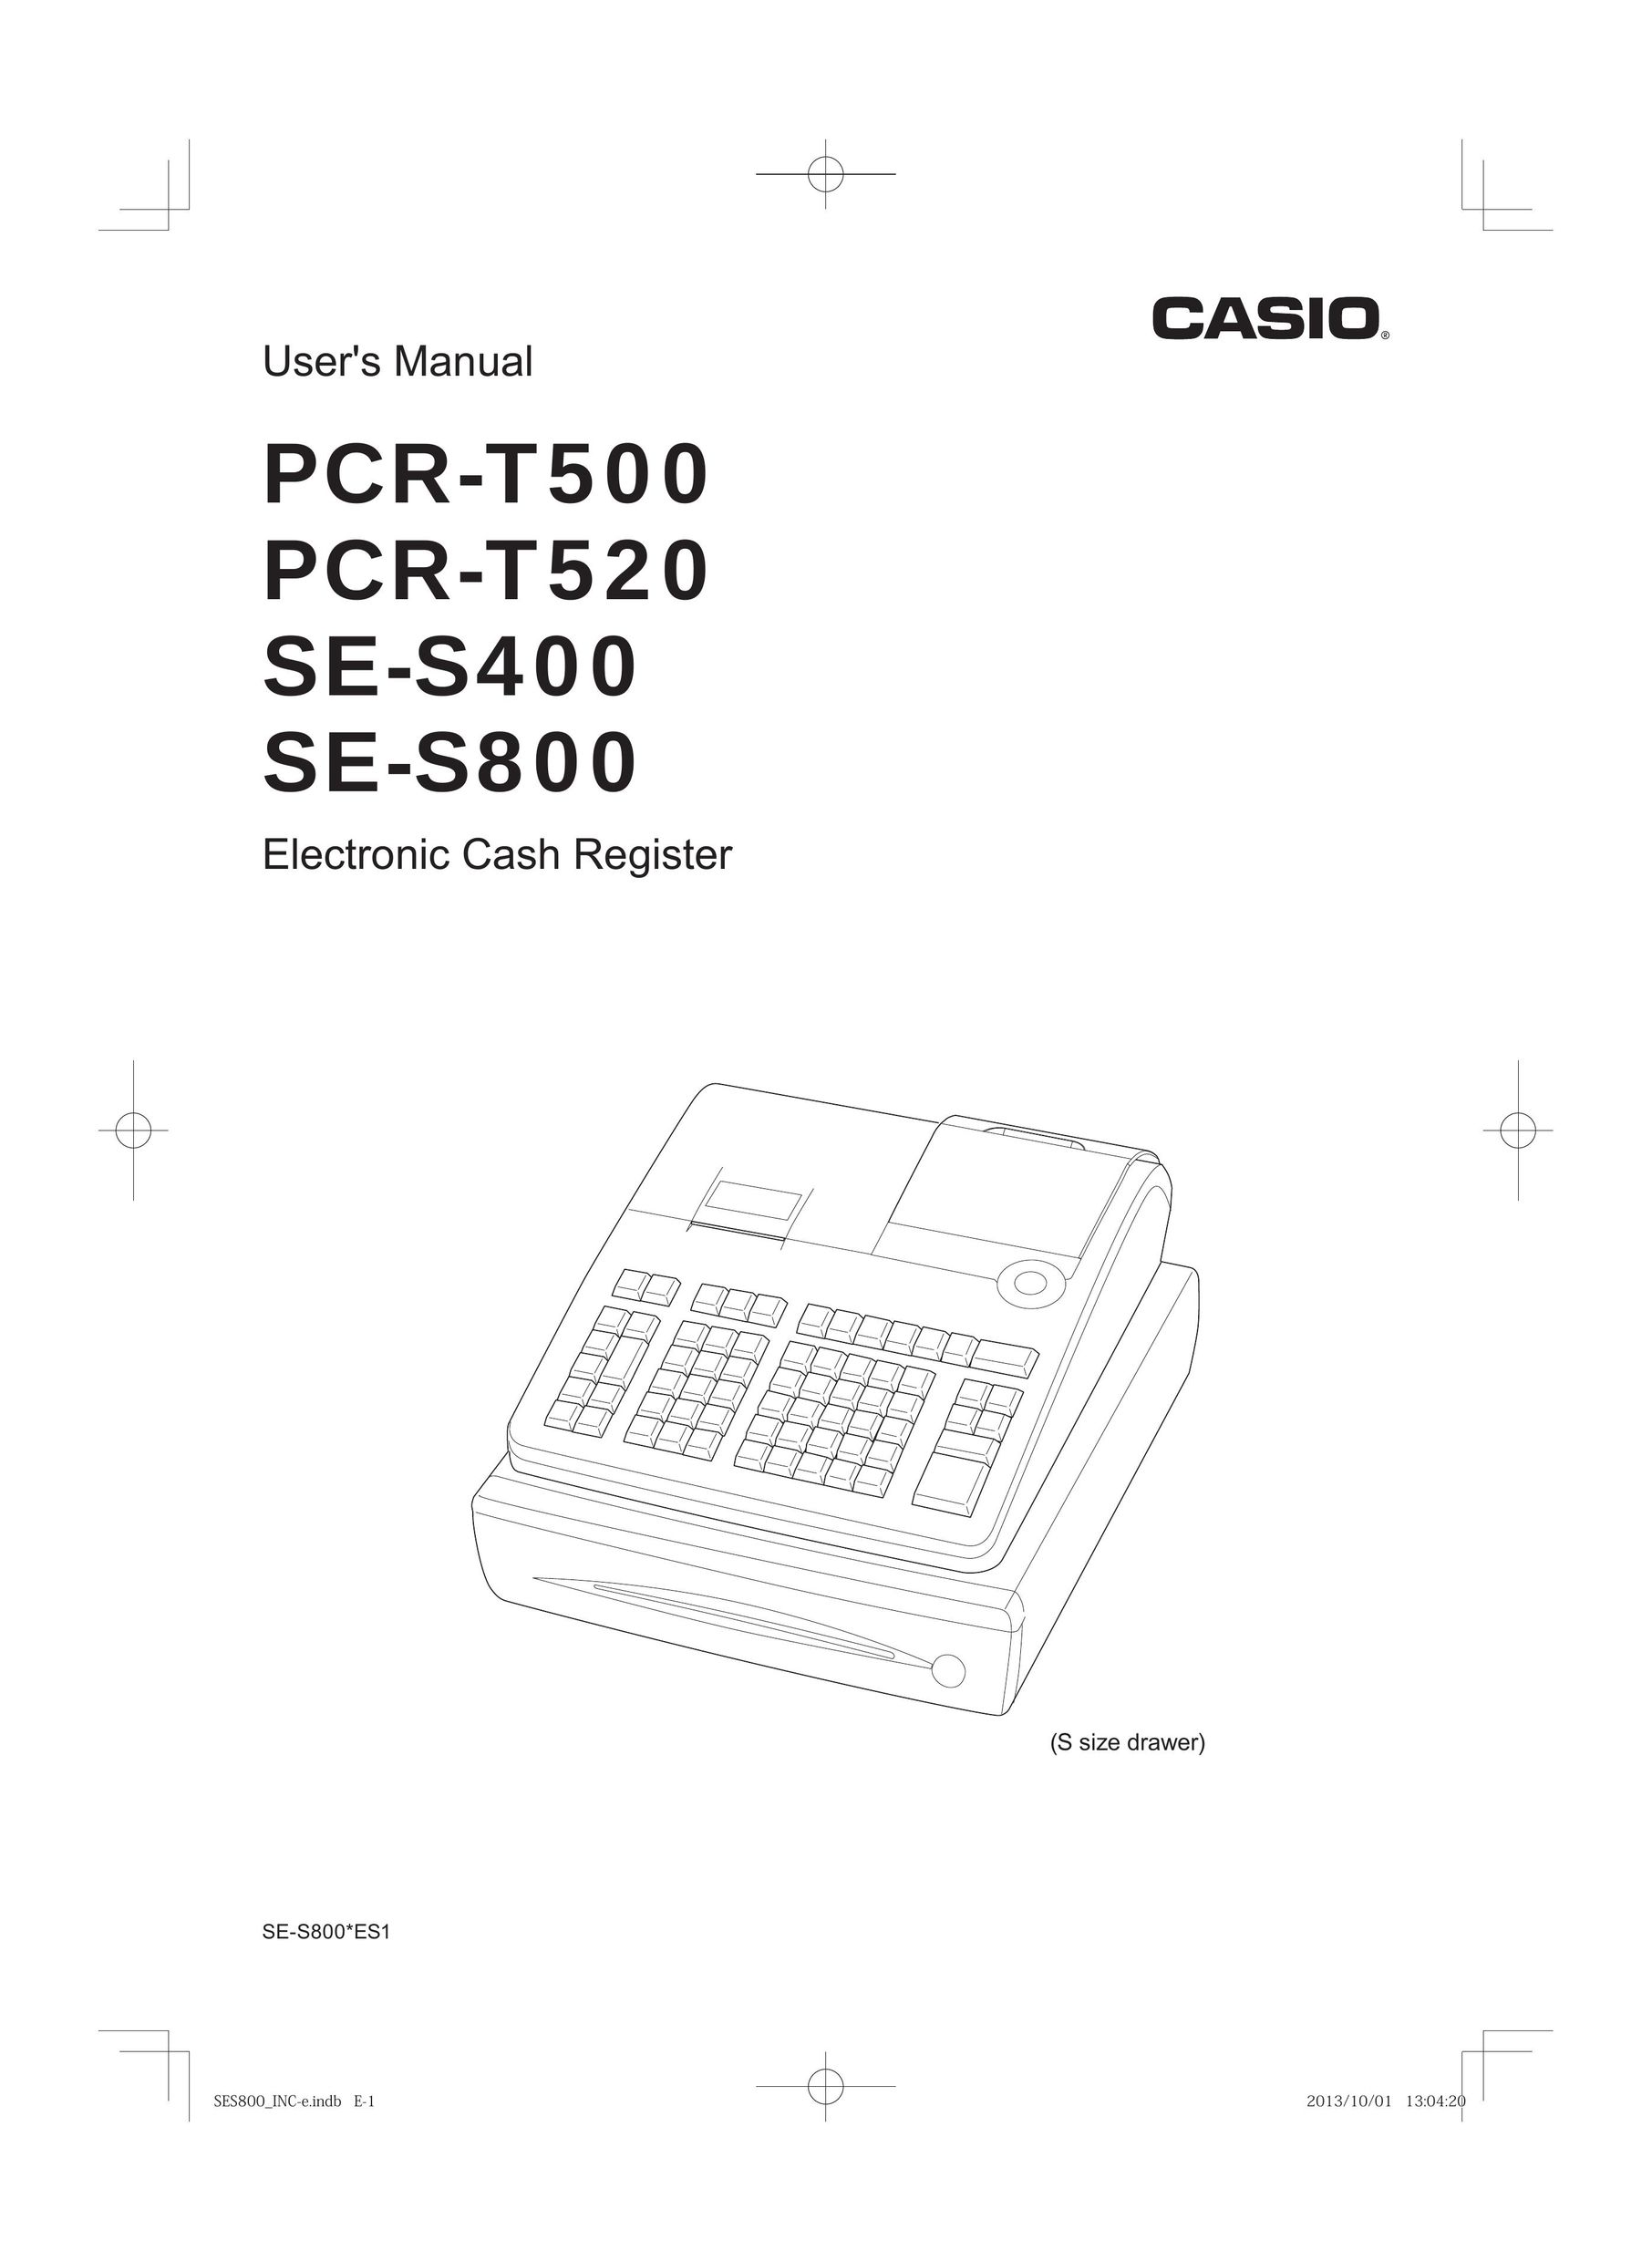 Casio PCR-T520 Cash Register User Manual